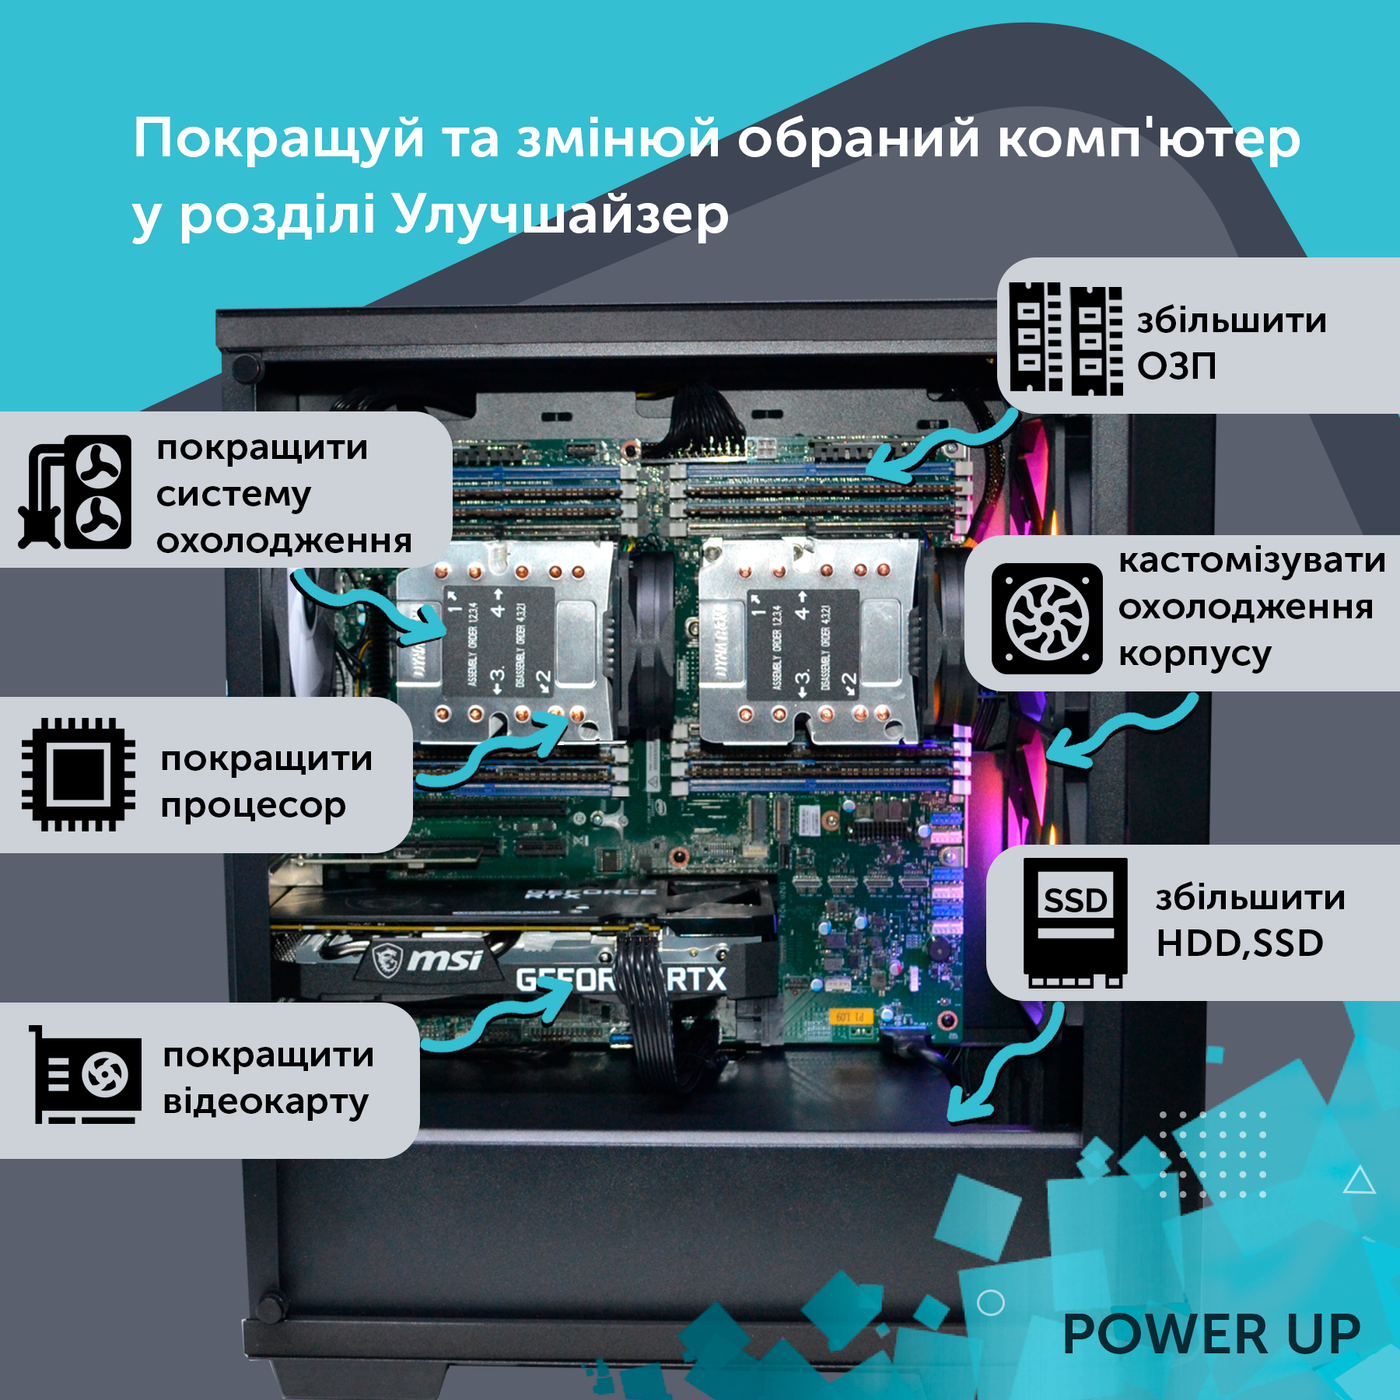 Двухпроцессорная рабочая станция PowerUp #428 Xeon E5 2690 v4 x2/64 GB/SSD 1TB/NVIDIA Quadro RTX A2000 6GB